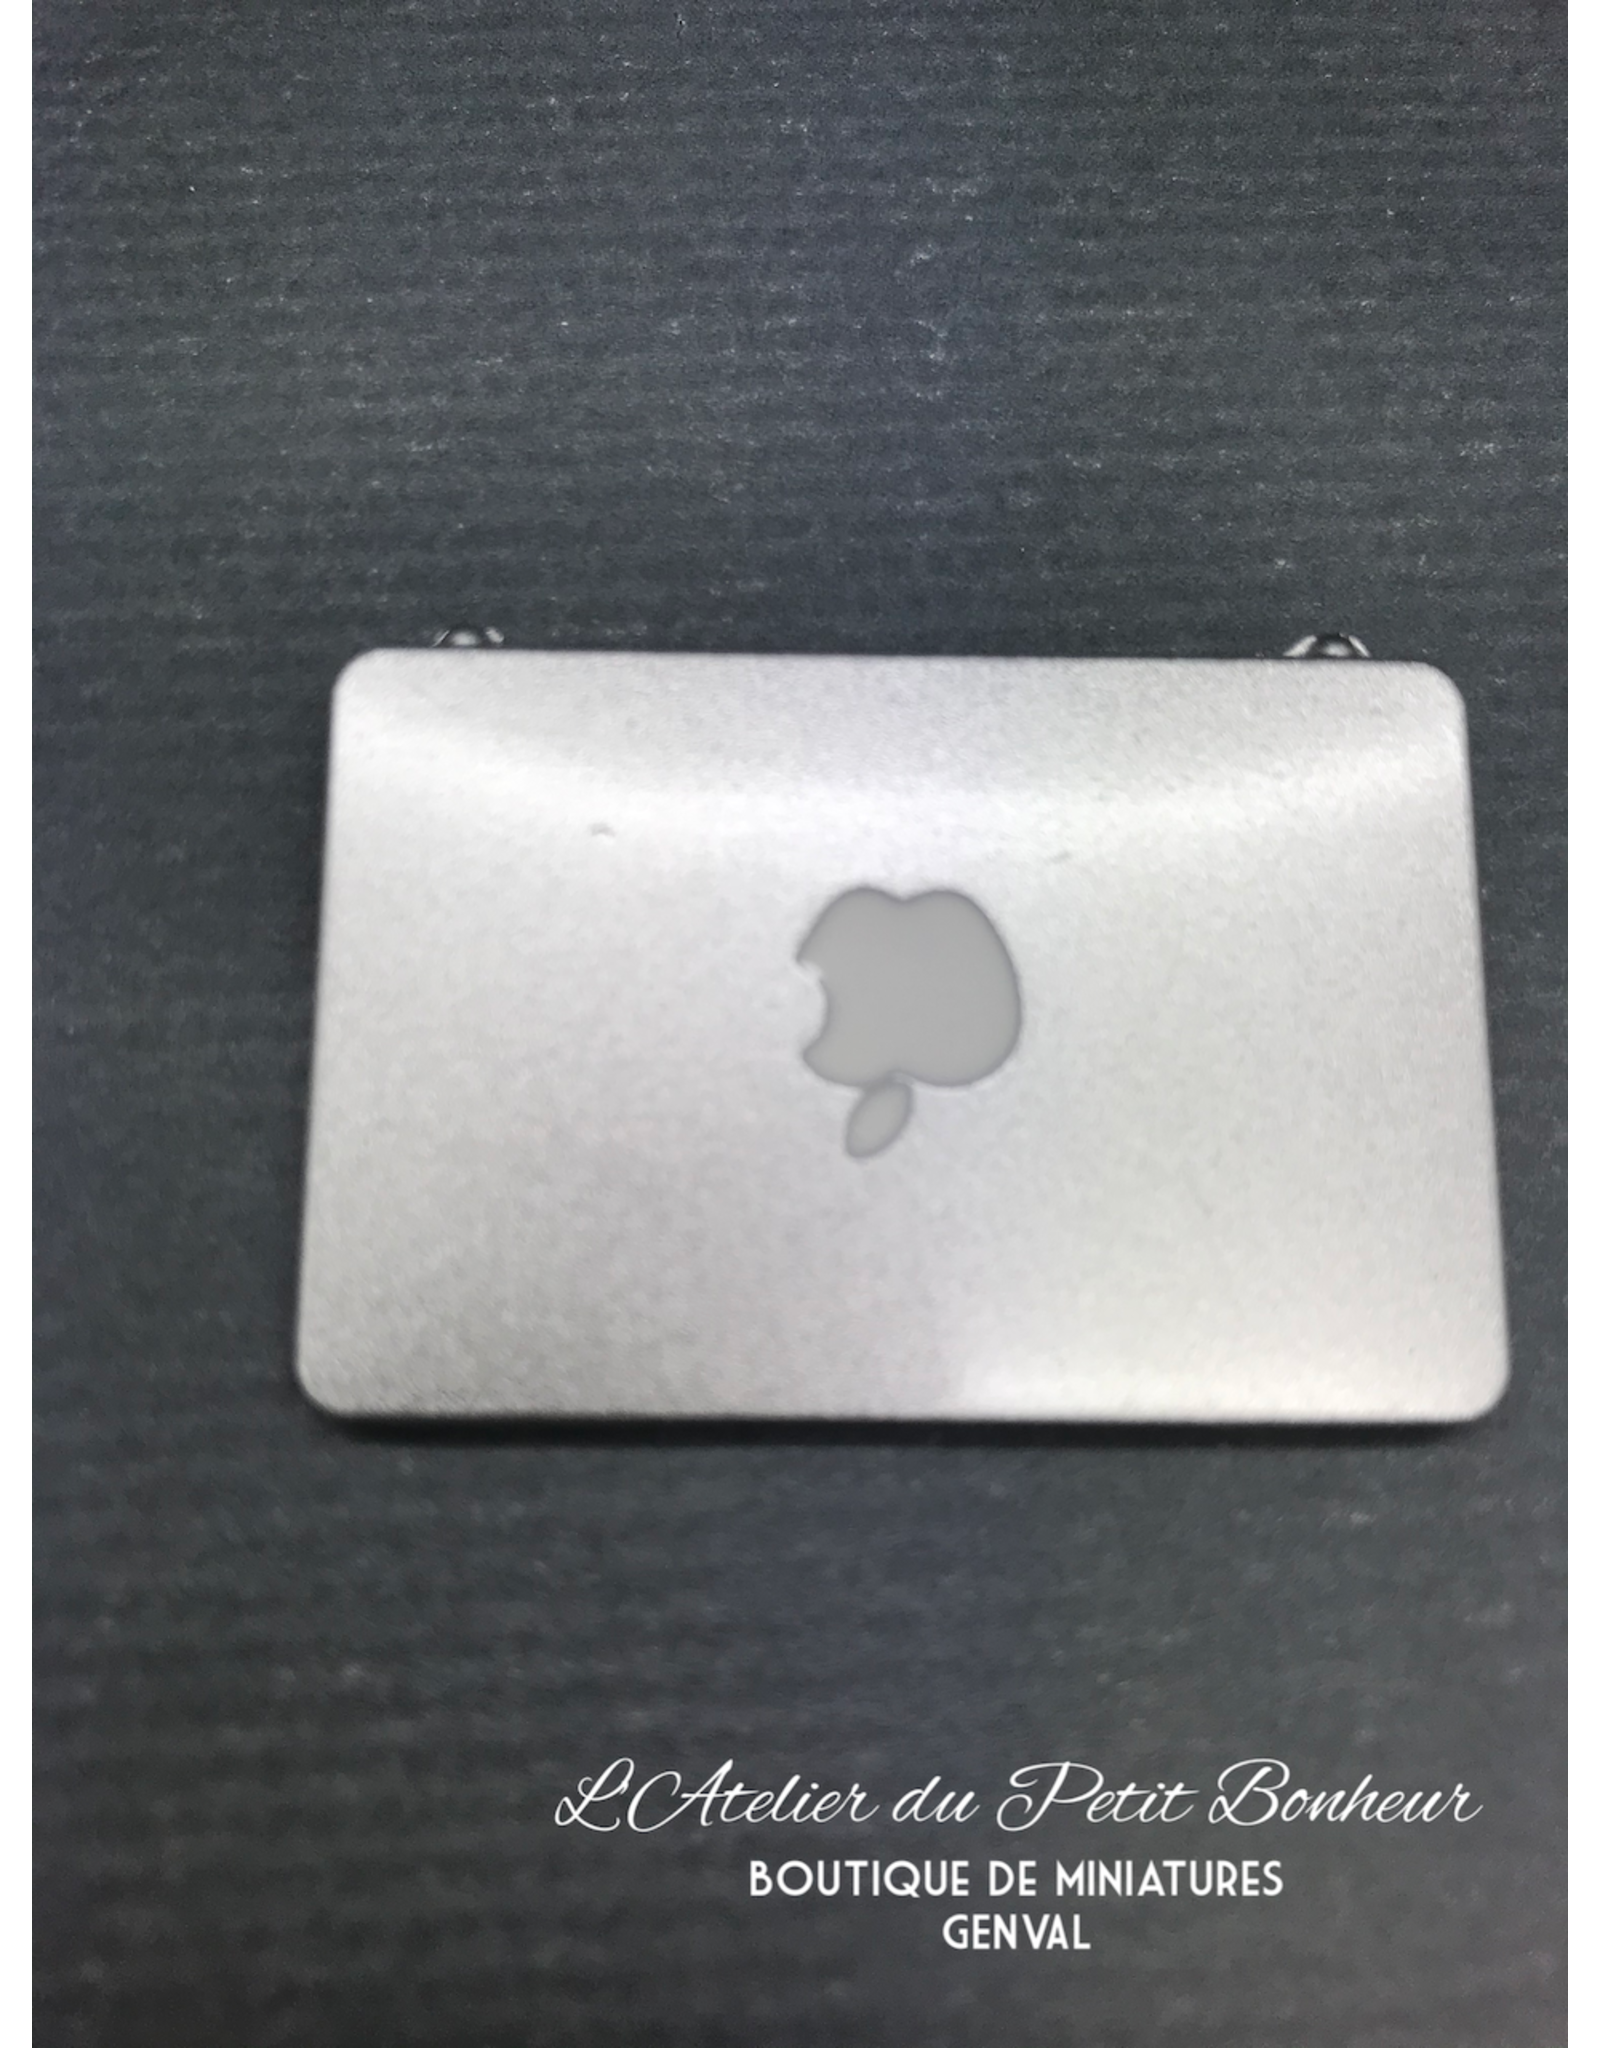 Mac Book miniature 1:12